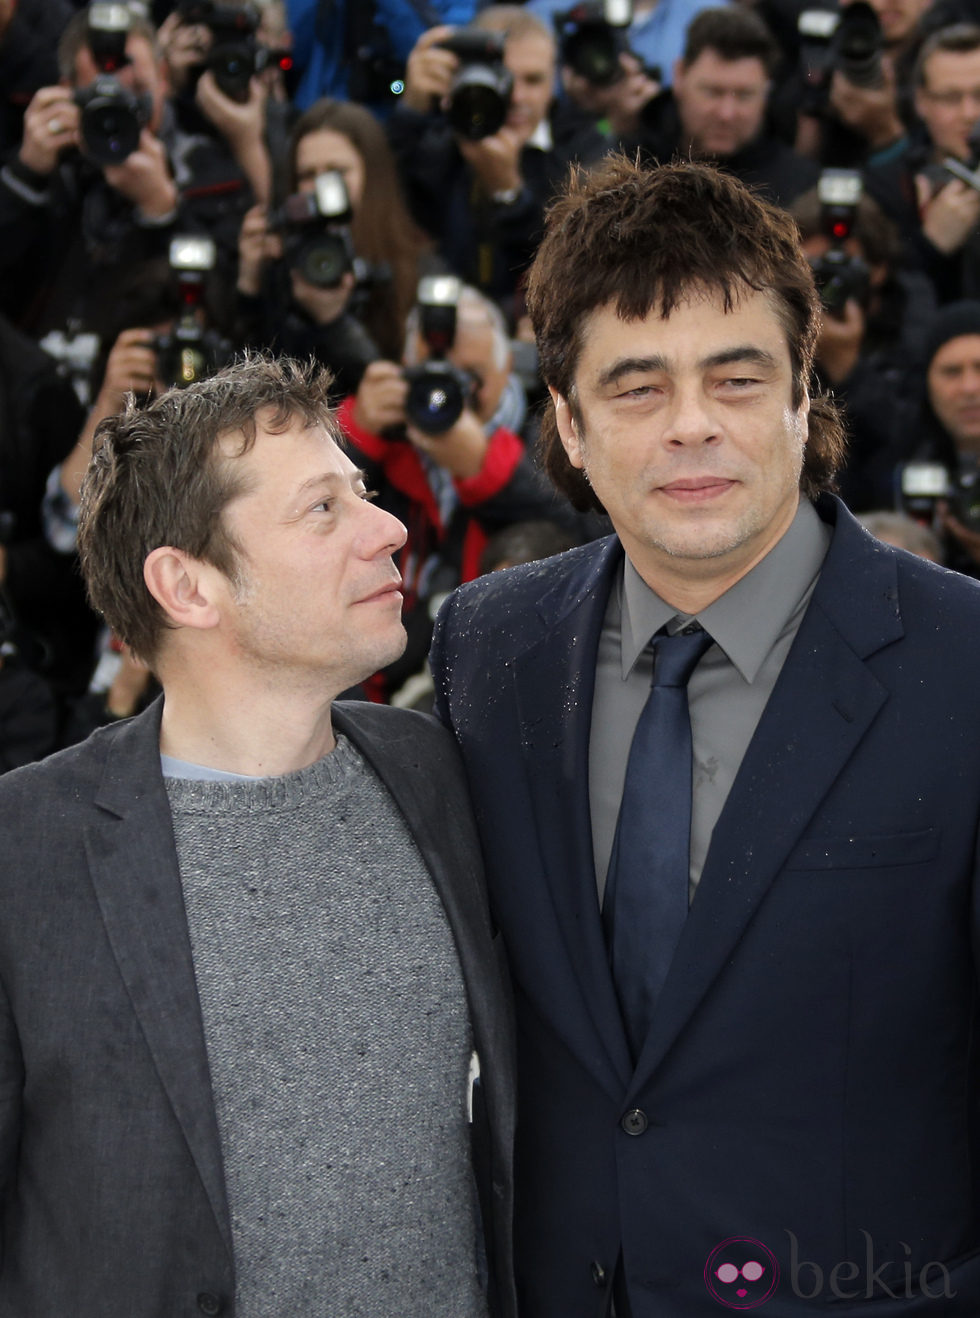 Mathieu Amalric y Benicio Del Toro en el Festival de Cannes 2013